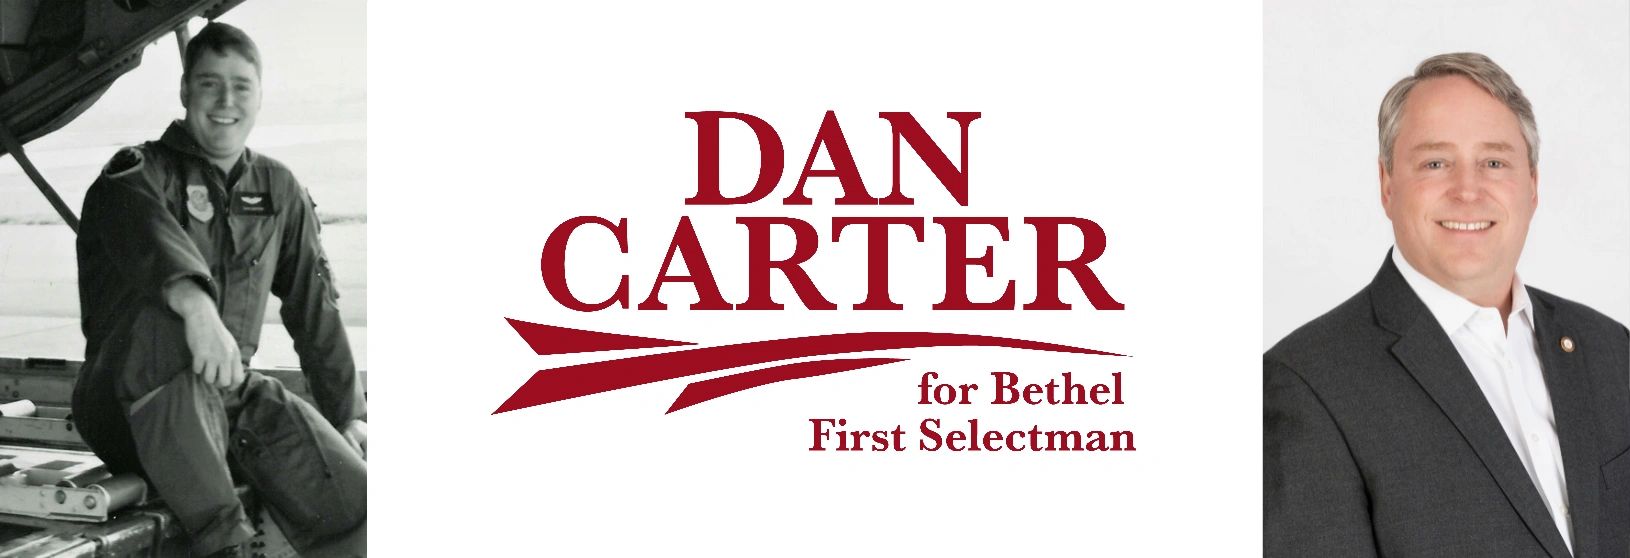 Dan for Bethel - Dan Carter, First Selectman, Bethel